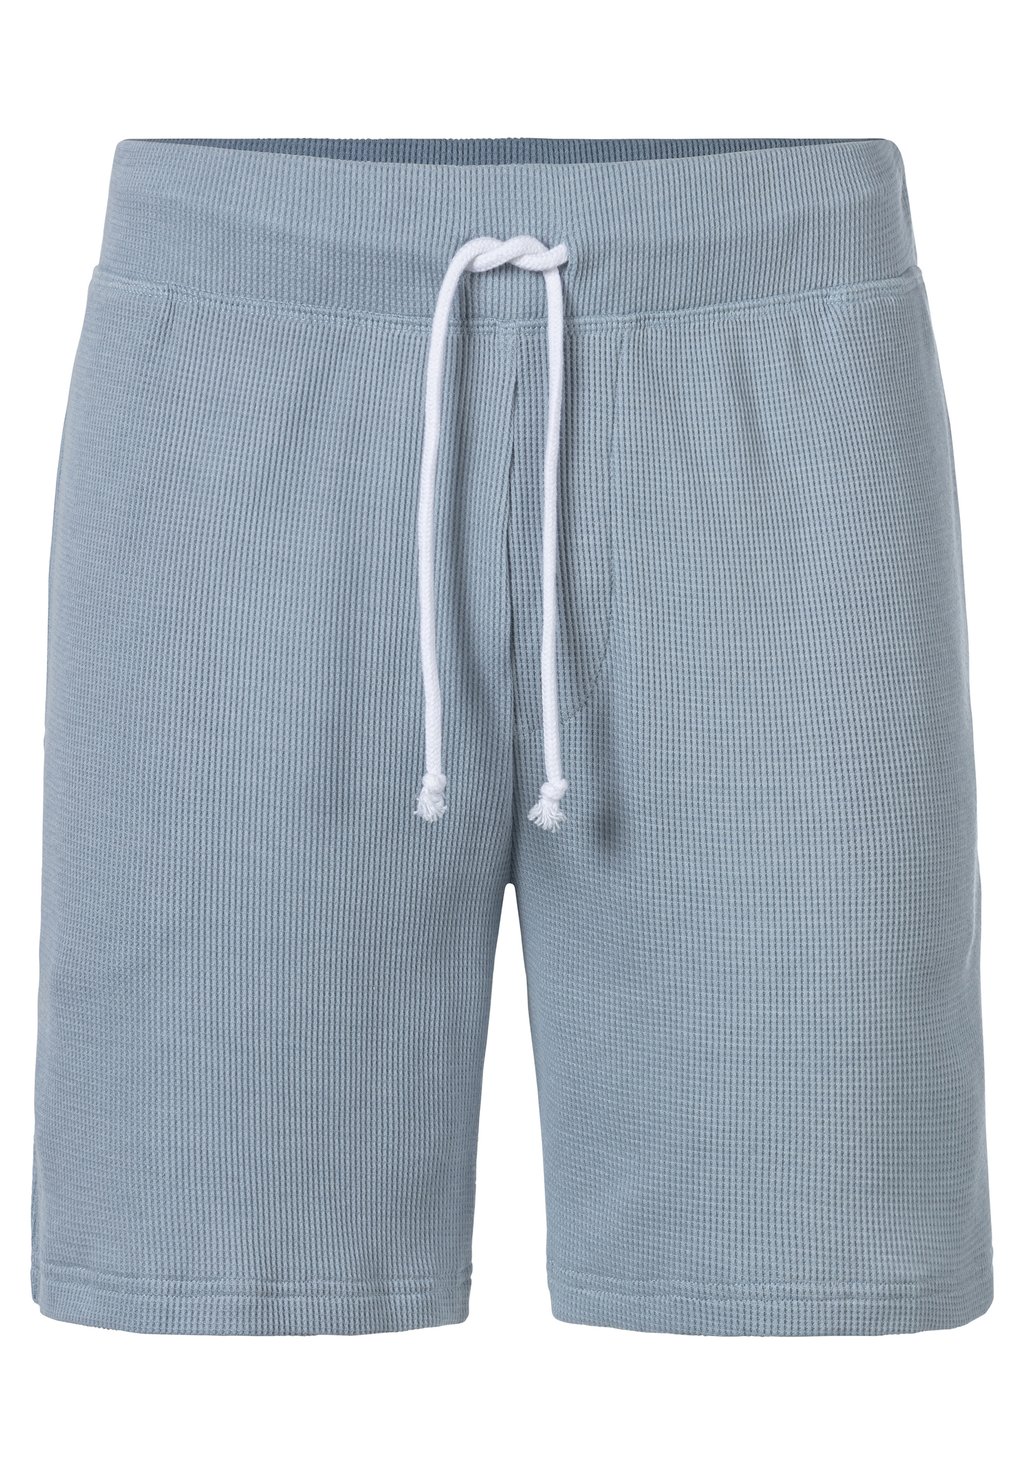 Пижамные брюки SCHLAF s.Oliver, синий